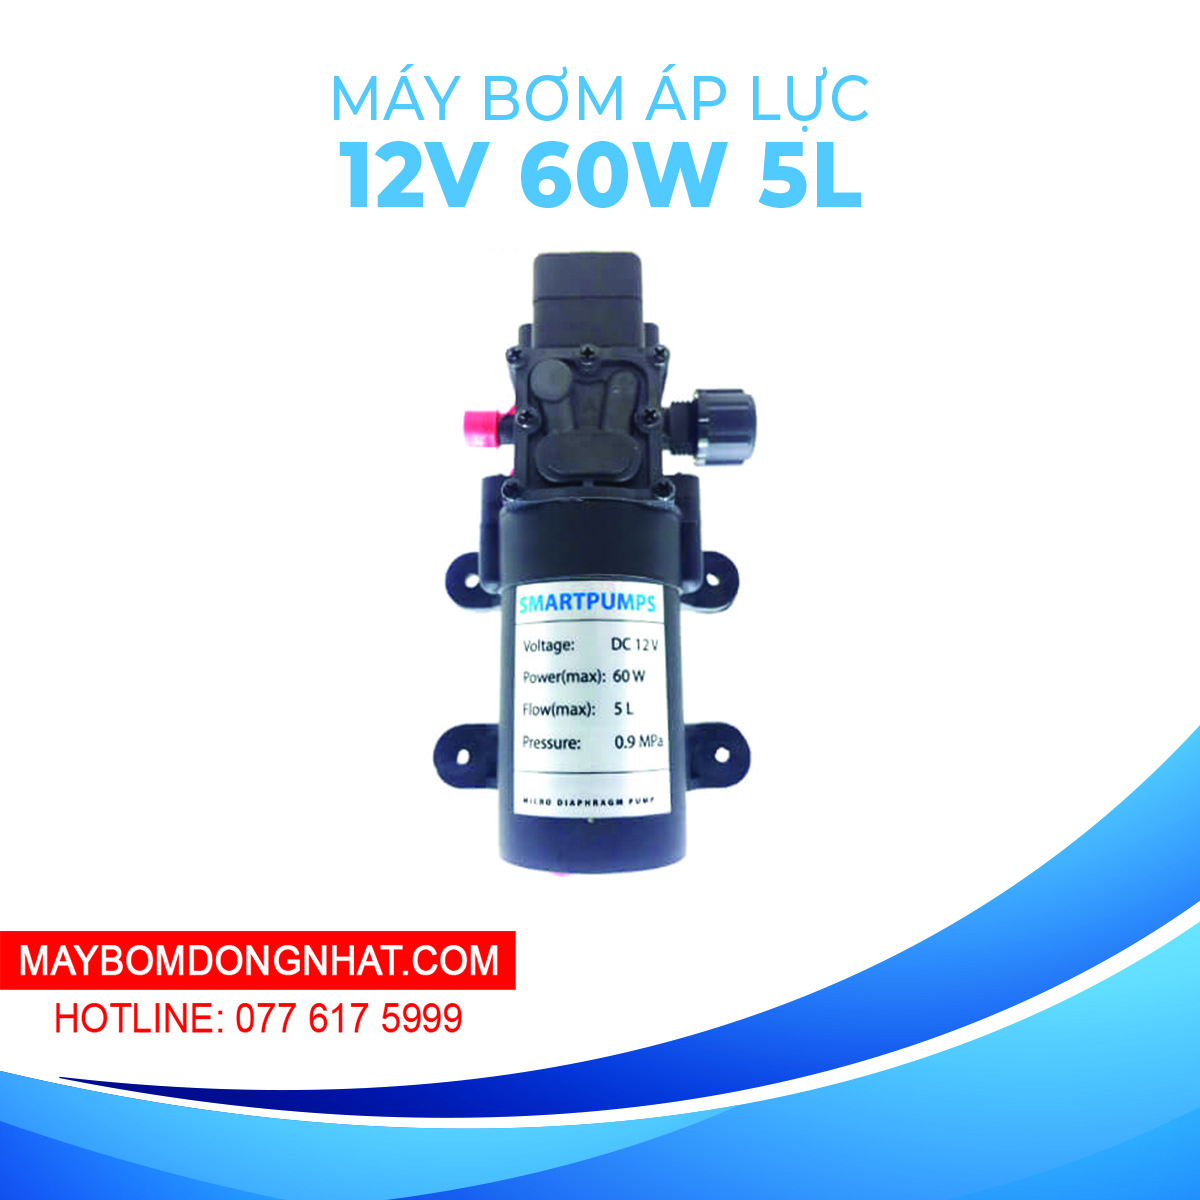 Máy bơm nước mini áp lực SmartPumpus 12V 60W 5L